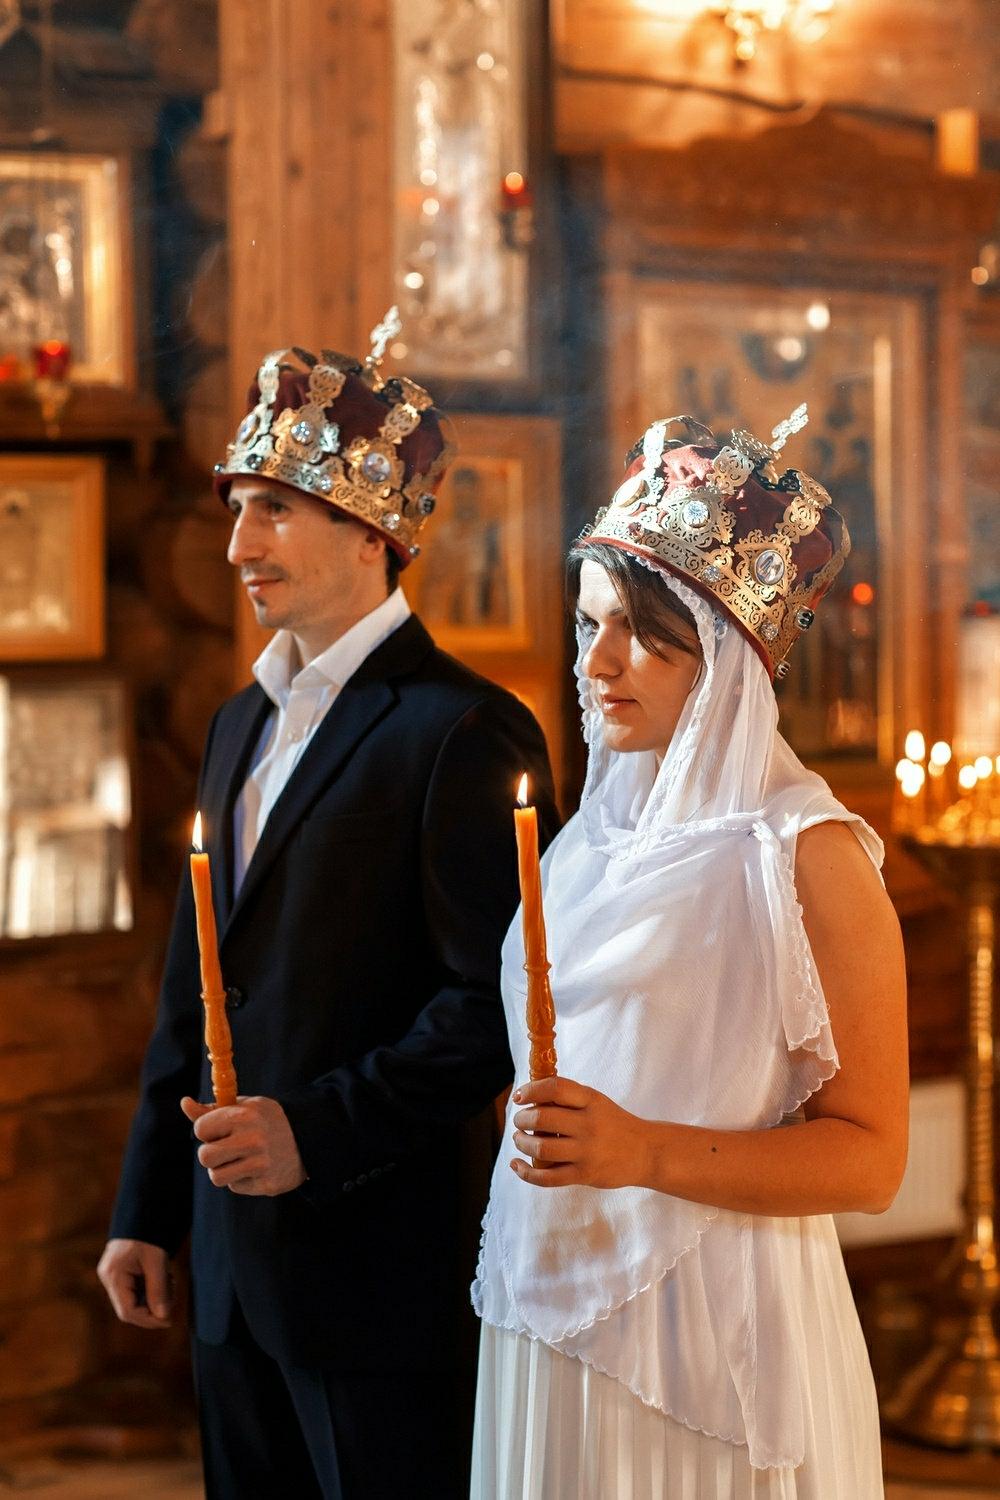 Сколько раз венчалась. Венчание в православной церкви. Венчание в храме. Свадьба в церкви. Церемония венчания в церкви.